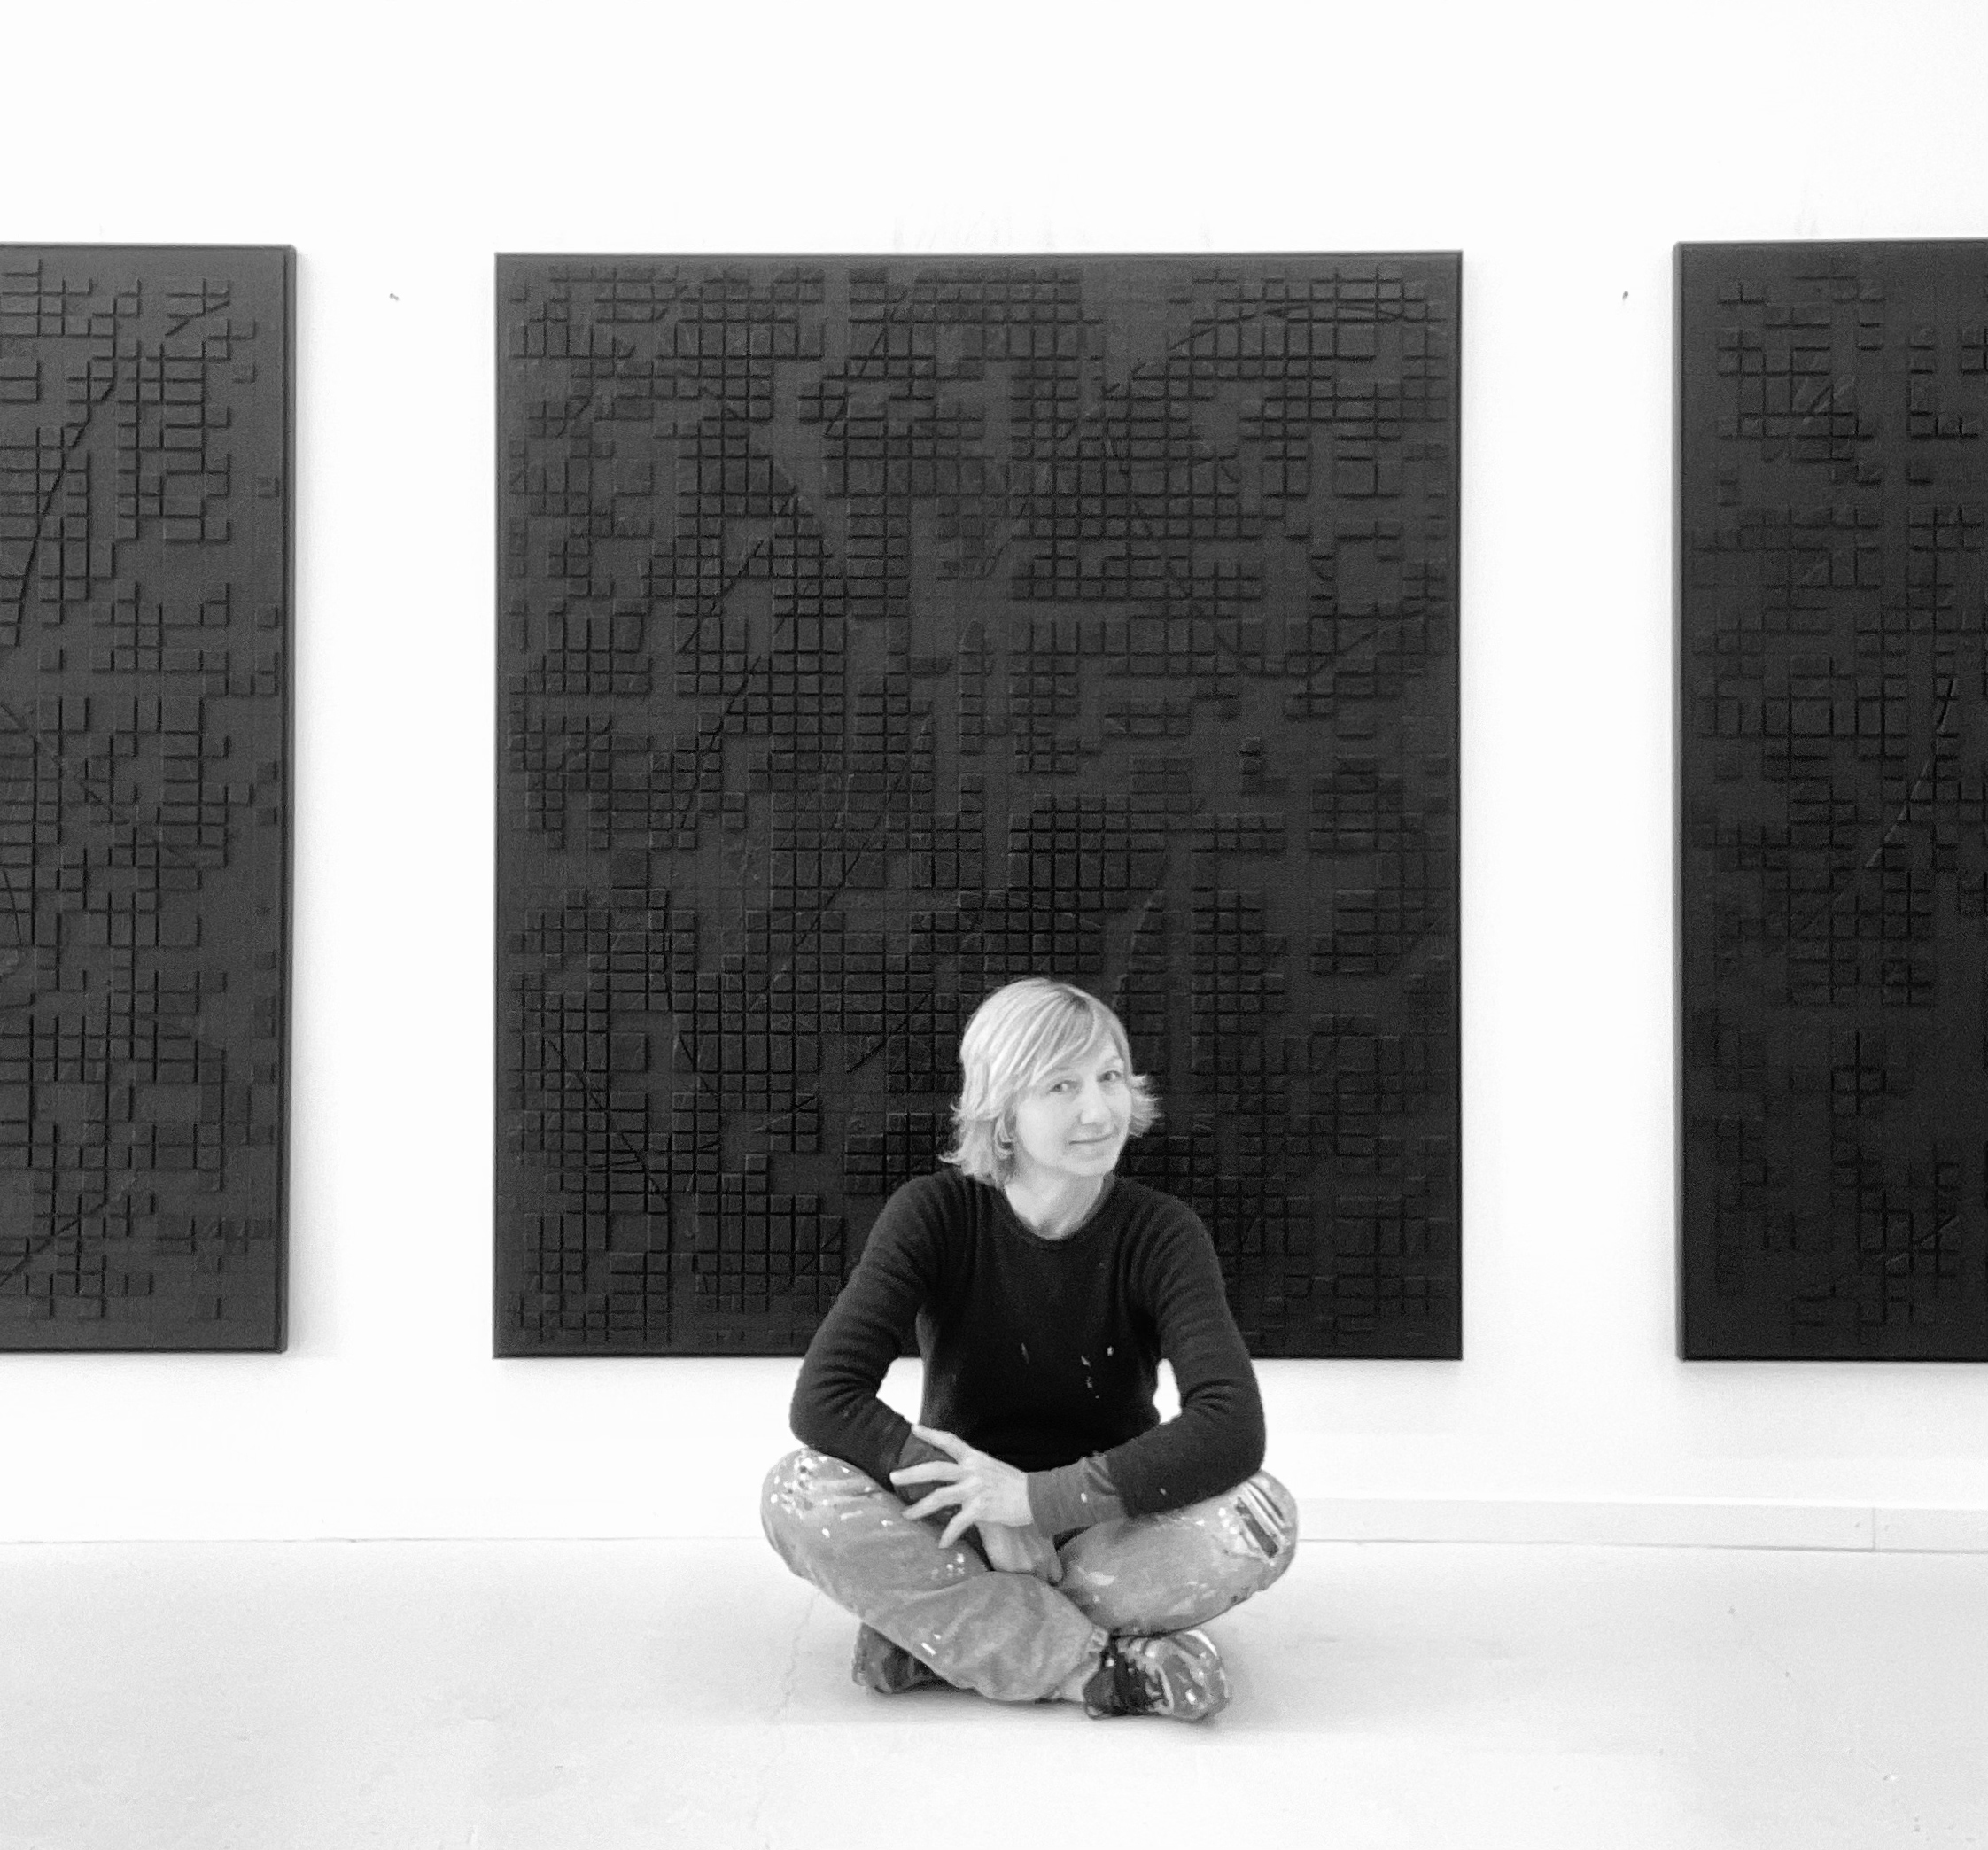 Anne-Sophie Øgaard at Galerie Klaus Braun Stuttgart, Art Exhibition